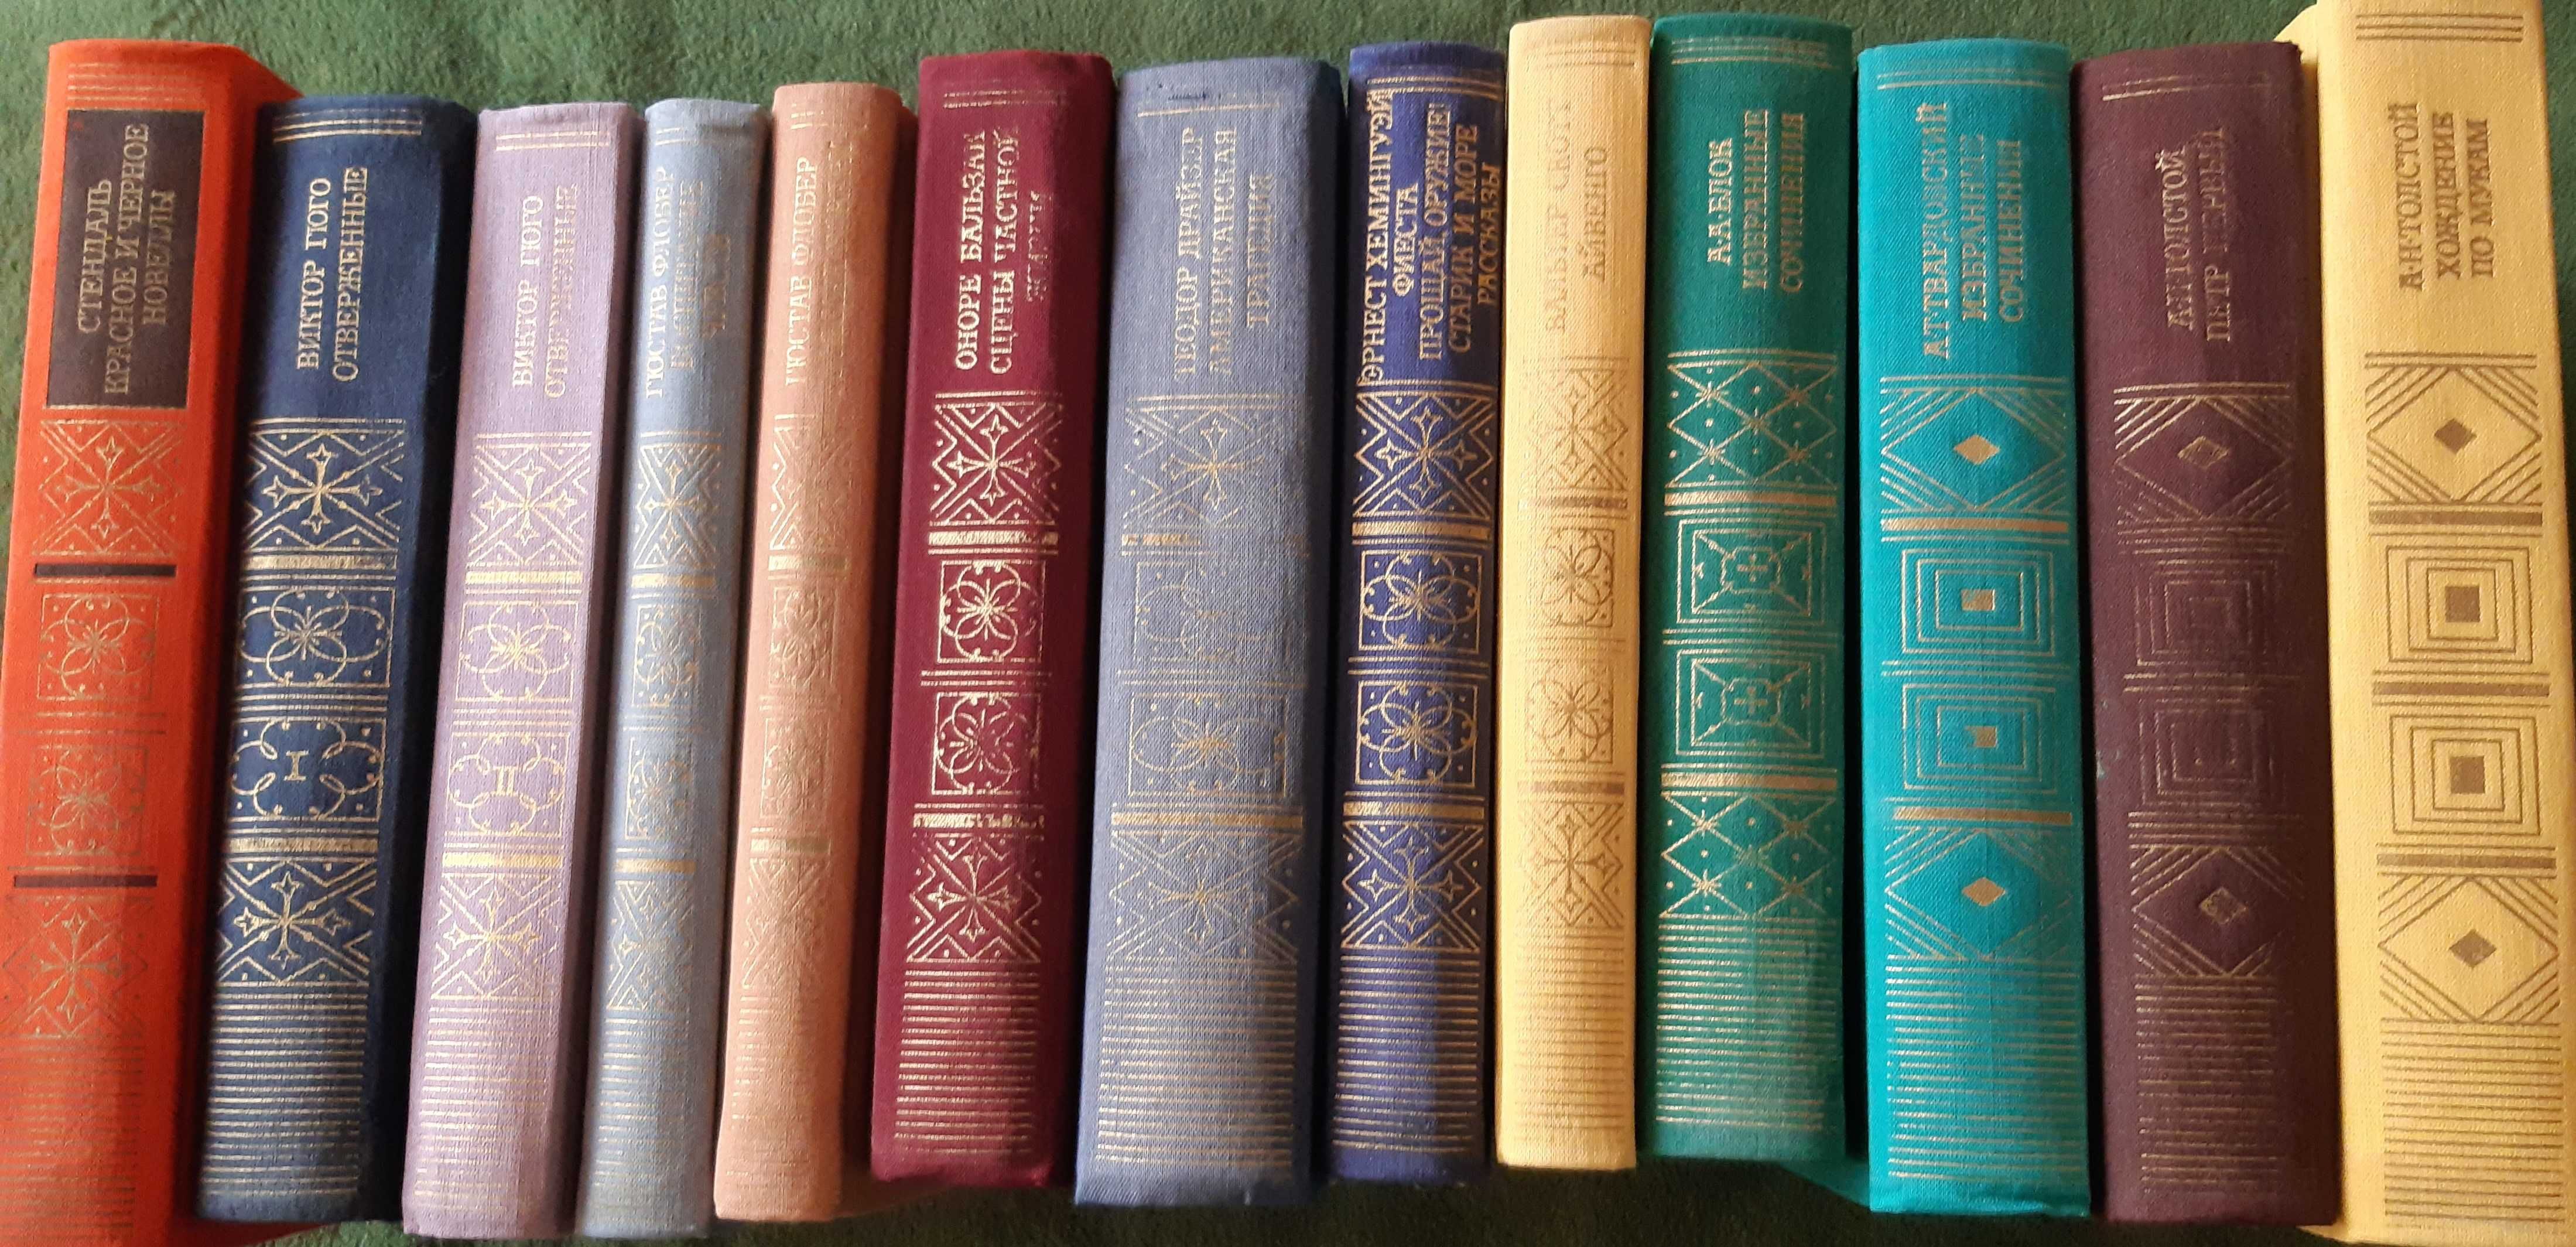 книги «Библиотека классики» Cкотт,Стендаль,Флобер,Бальзак,Блок,etc